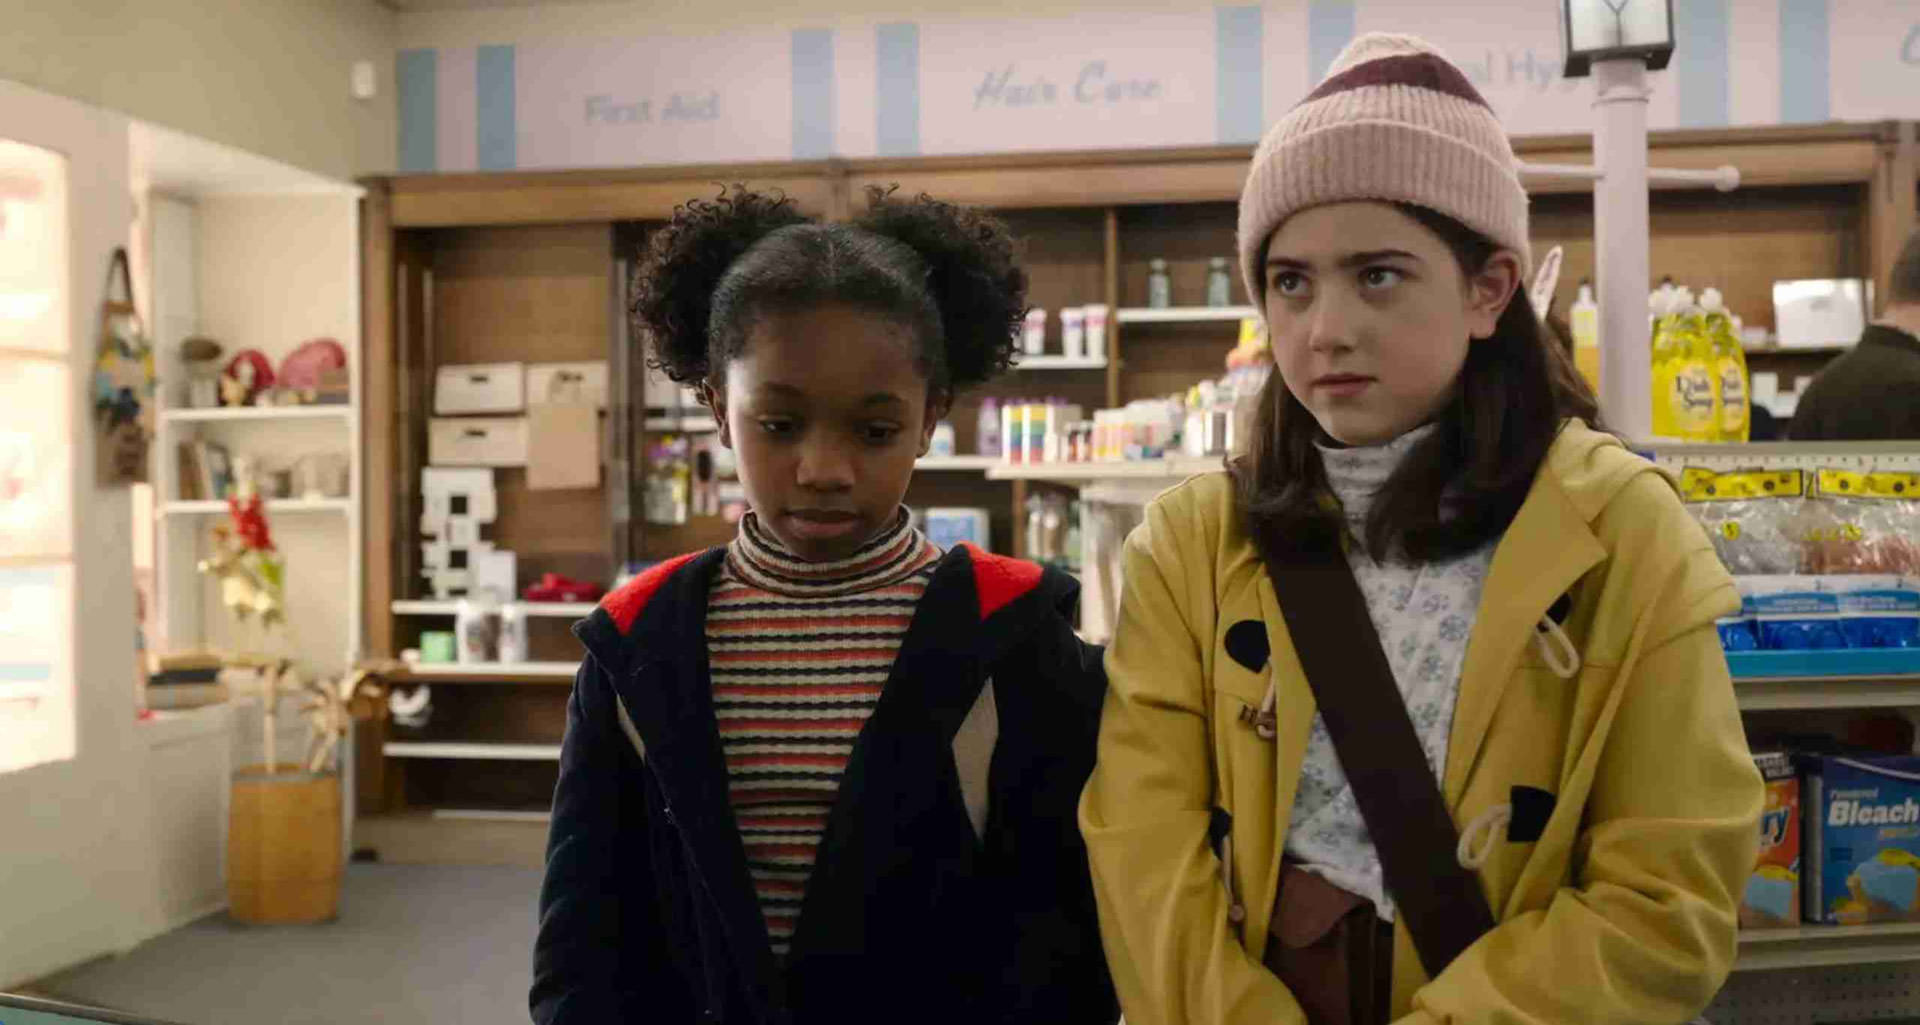 دو دختربچه داخل یک فروشگاه در نمایی از فیلم خدایا هستی؟ منم مارگارت به کارگردانی کلی فرمون کریگ